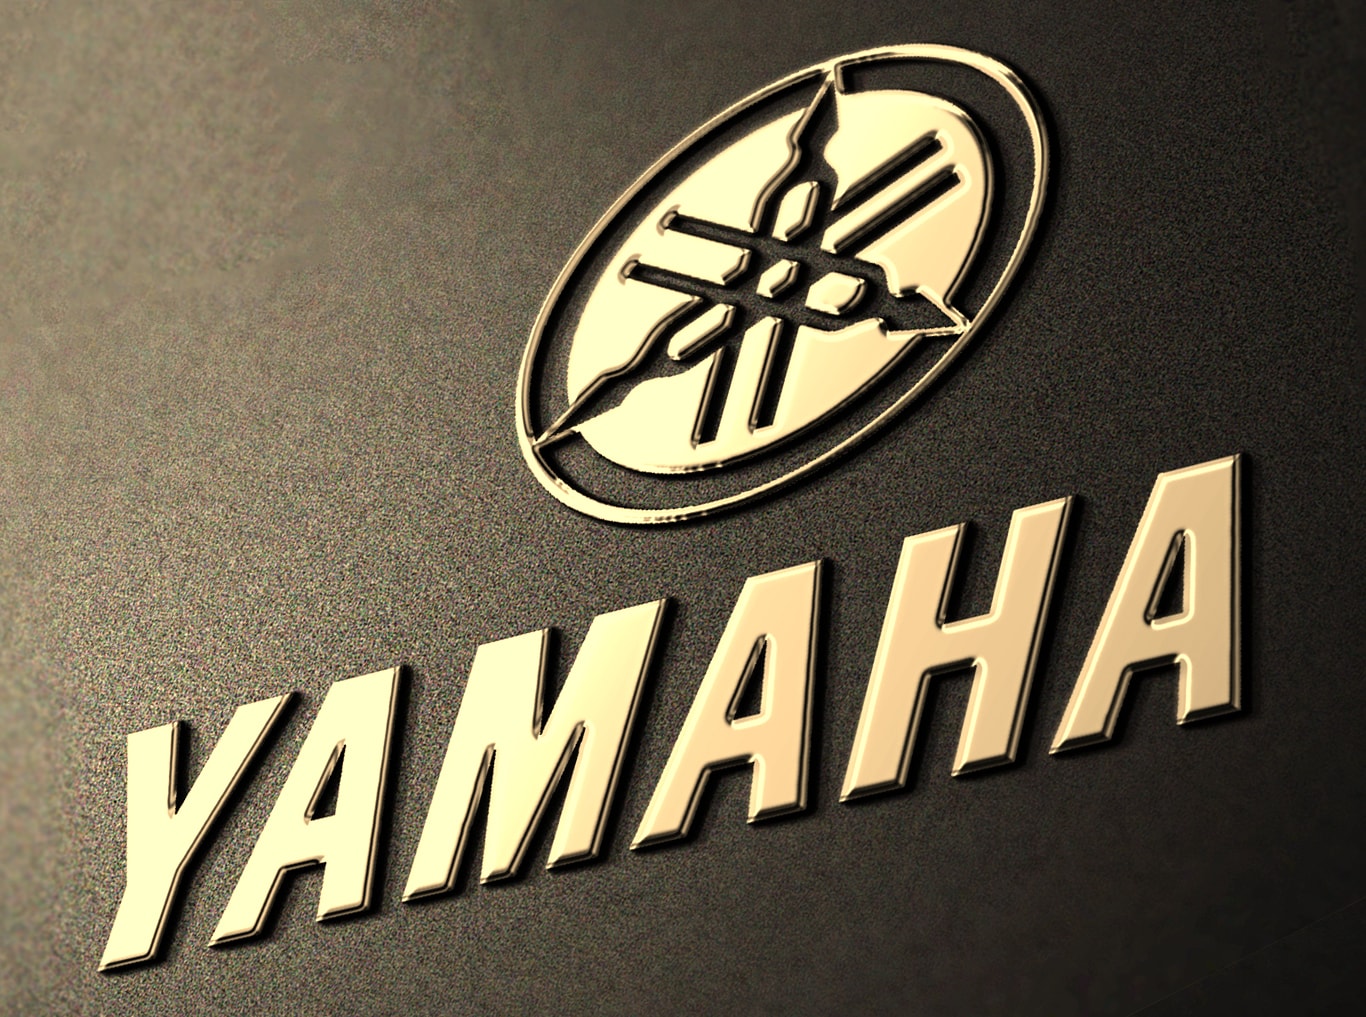 雅马哈摩托车有限公司标志